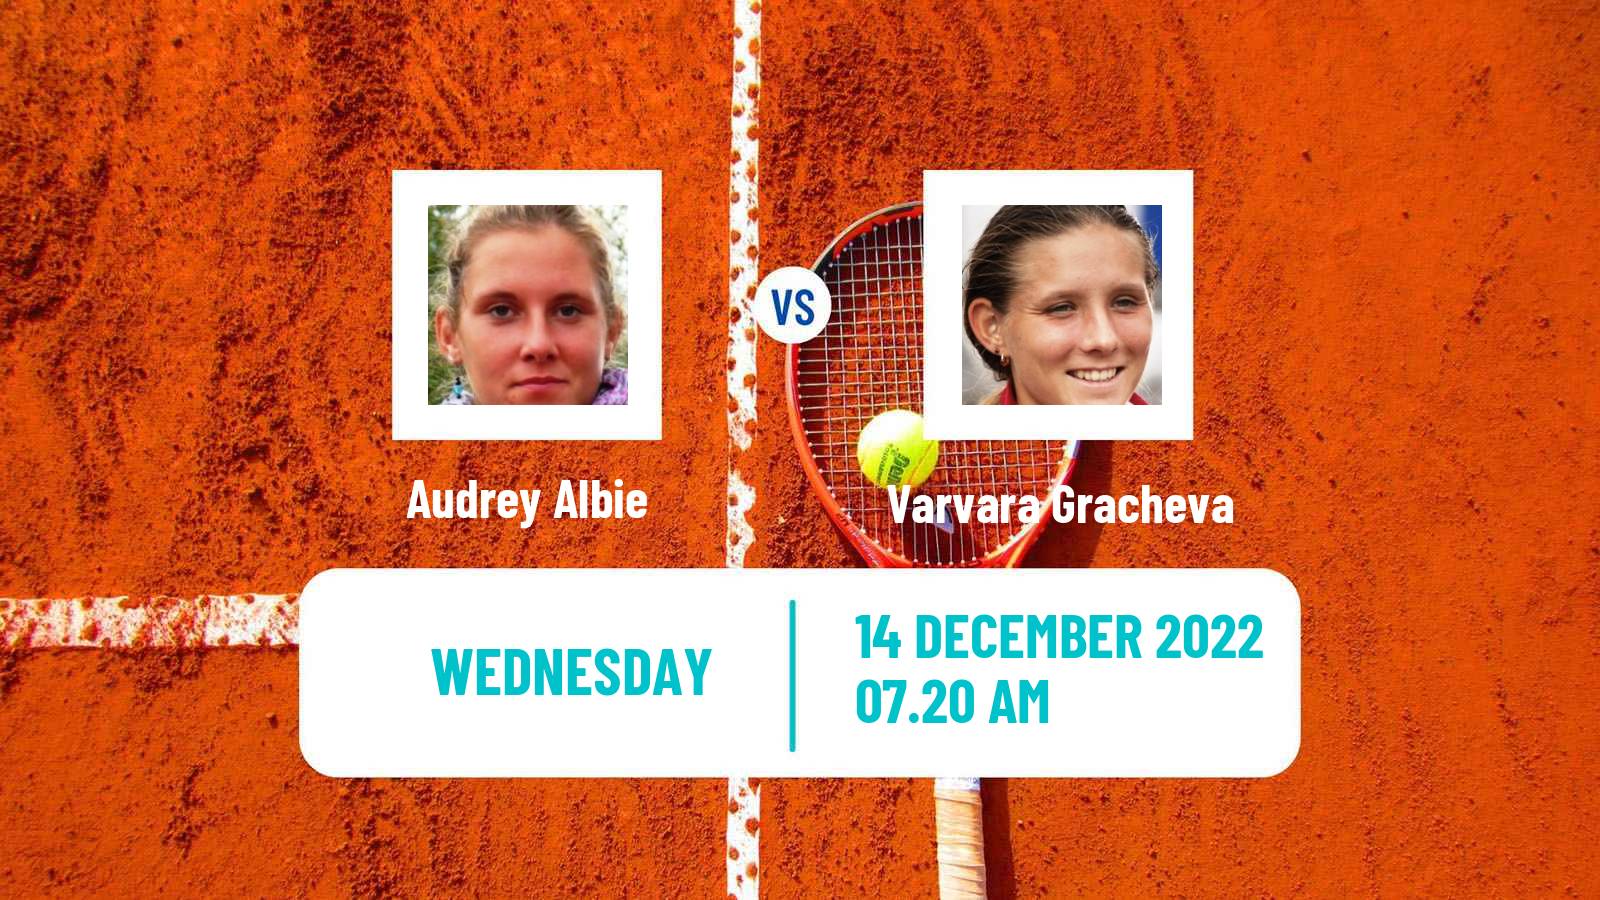 Tennis ATP Challenger Audrey Albie - Varvara Gracheva